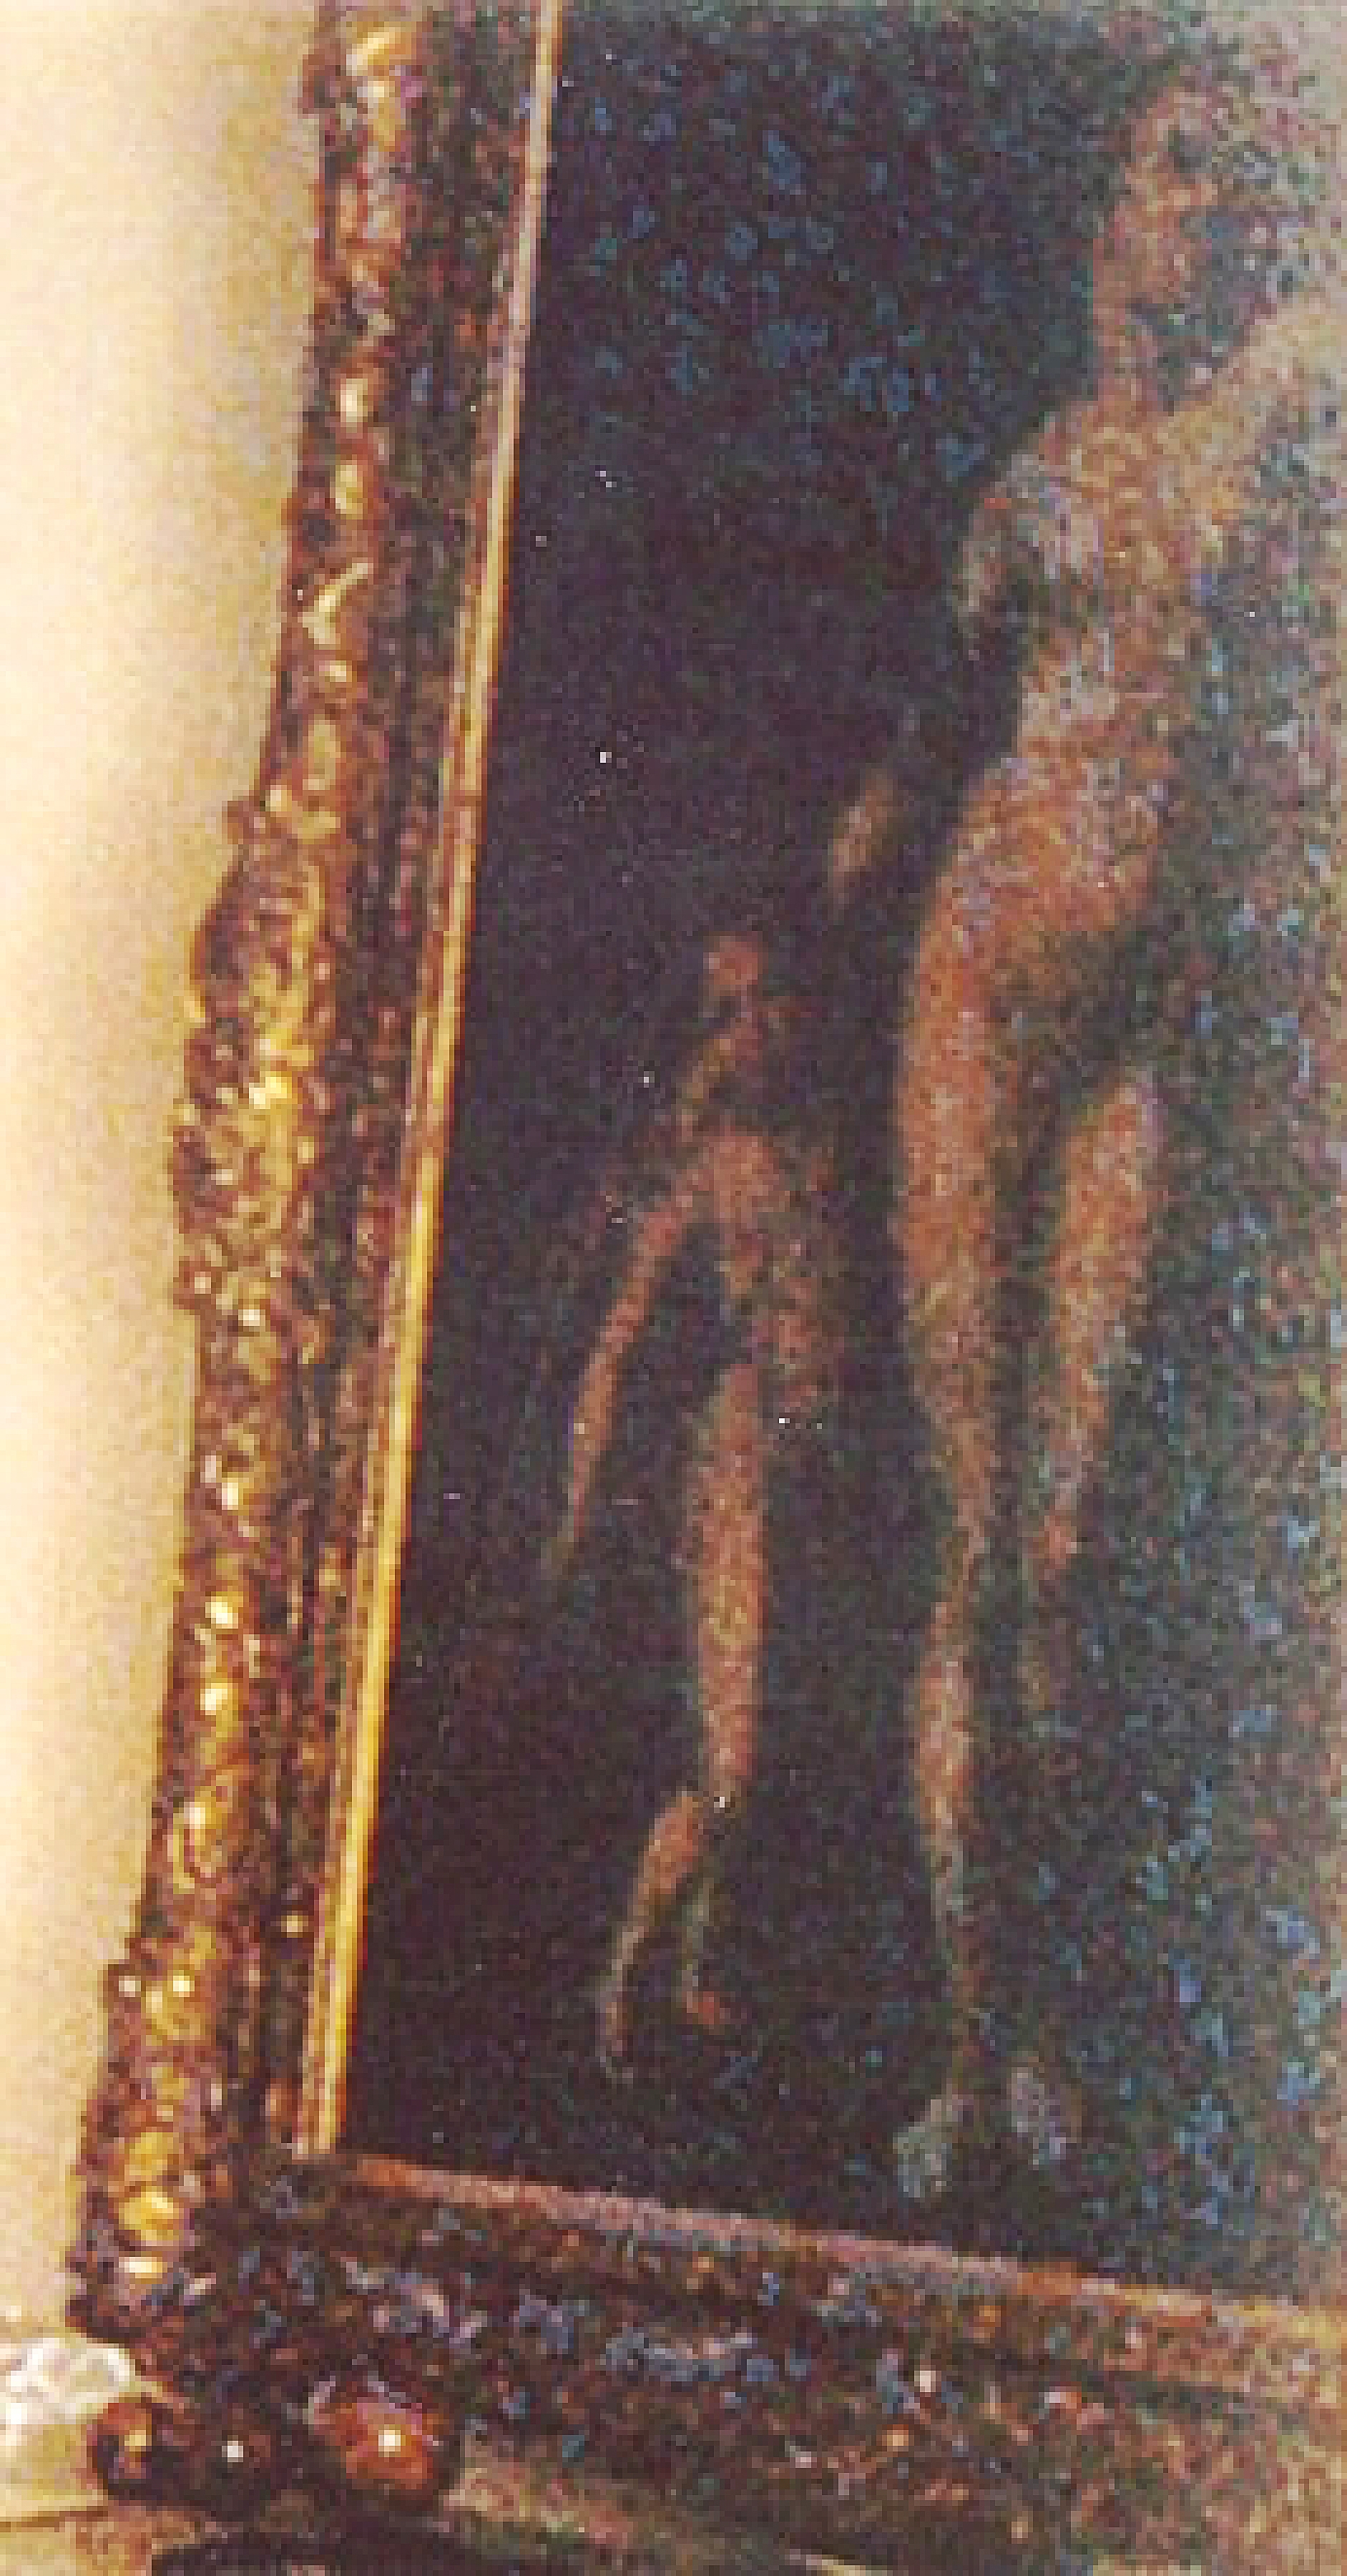 Nude Venus with Cupid